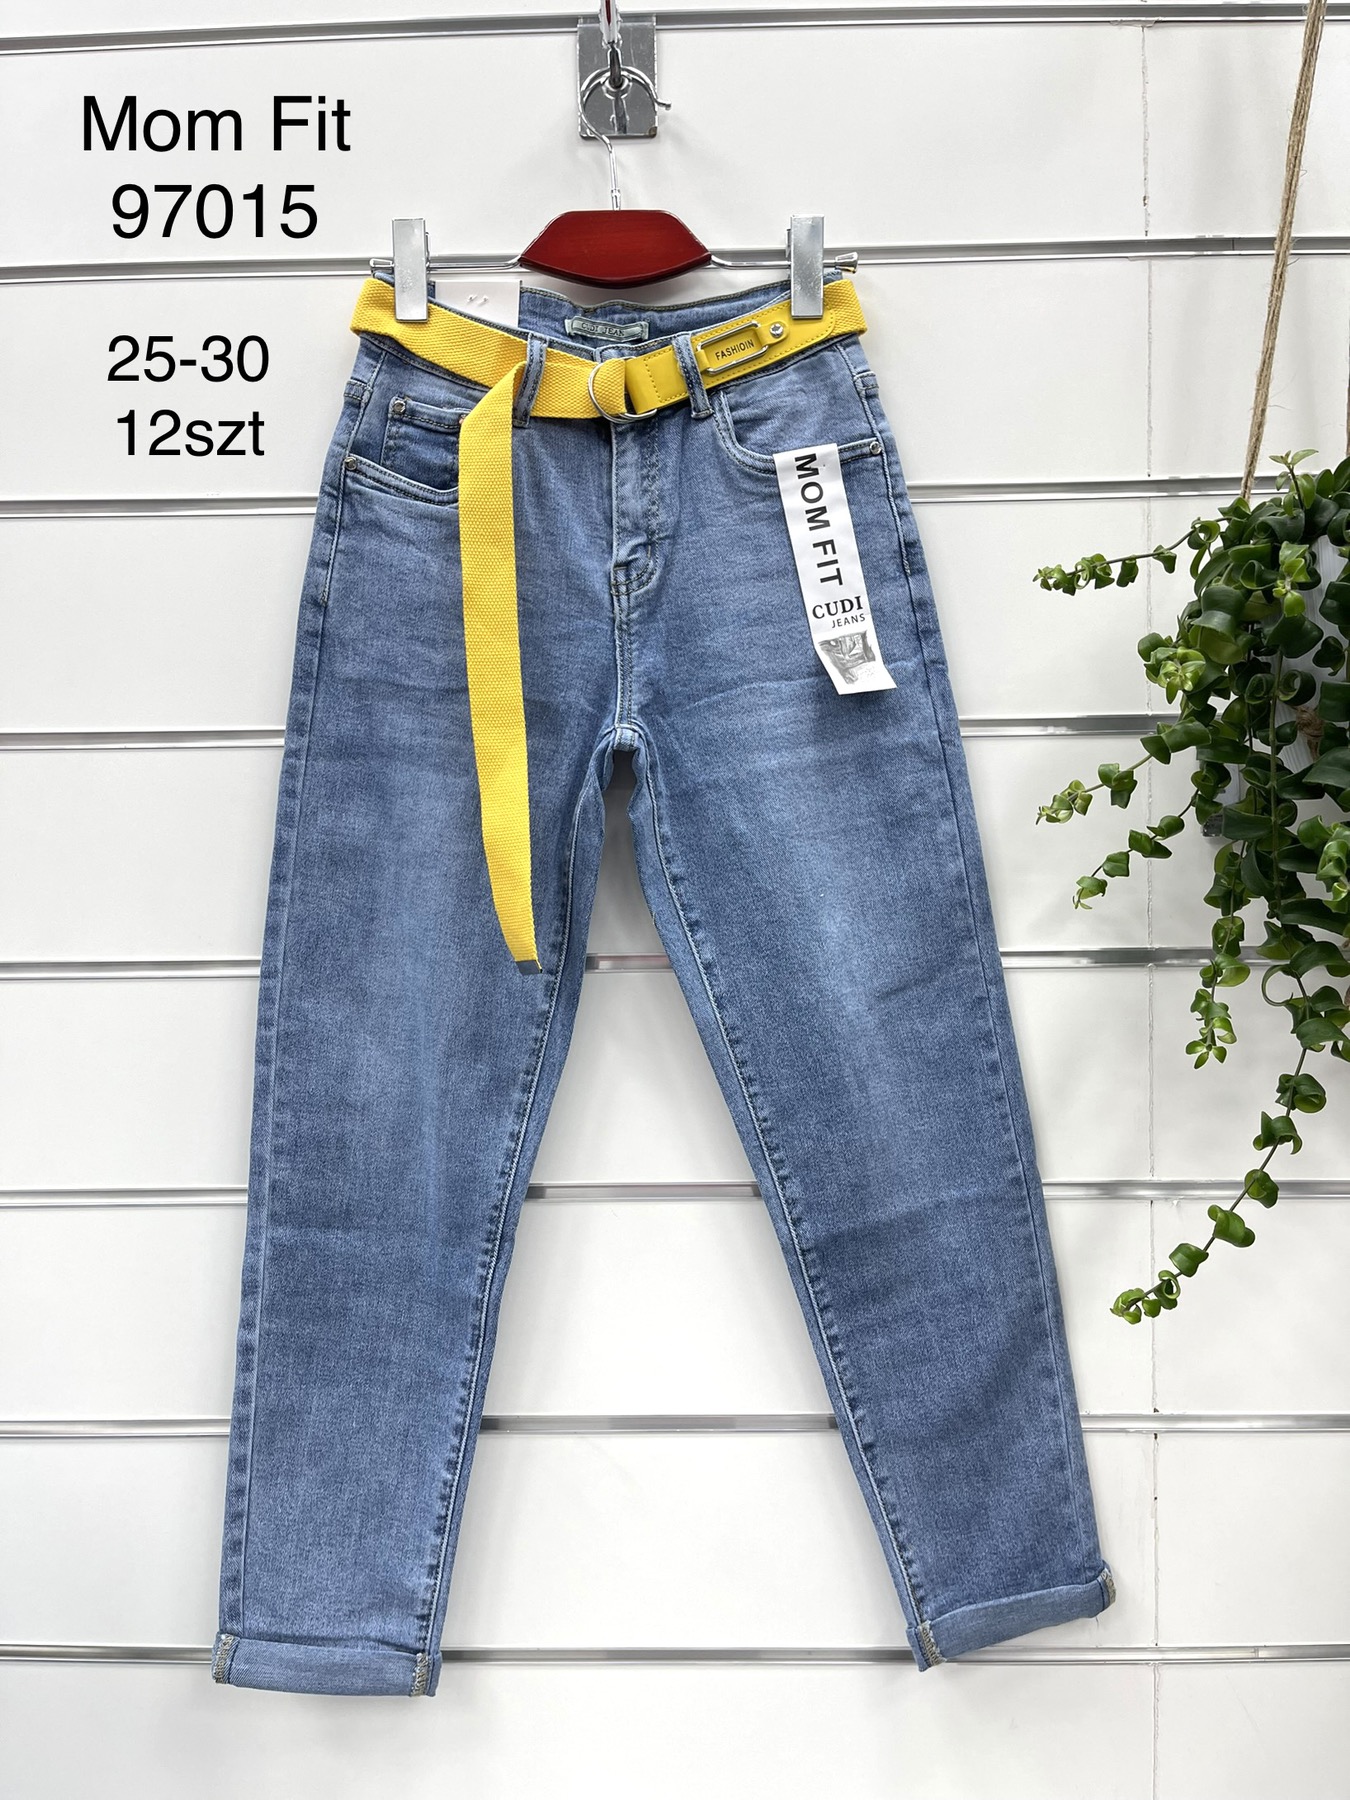 Spodnie damskie jeans Roz 25-30.  1 kolor . Paczka 12szt